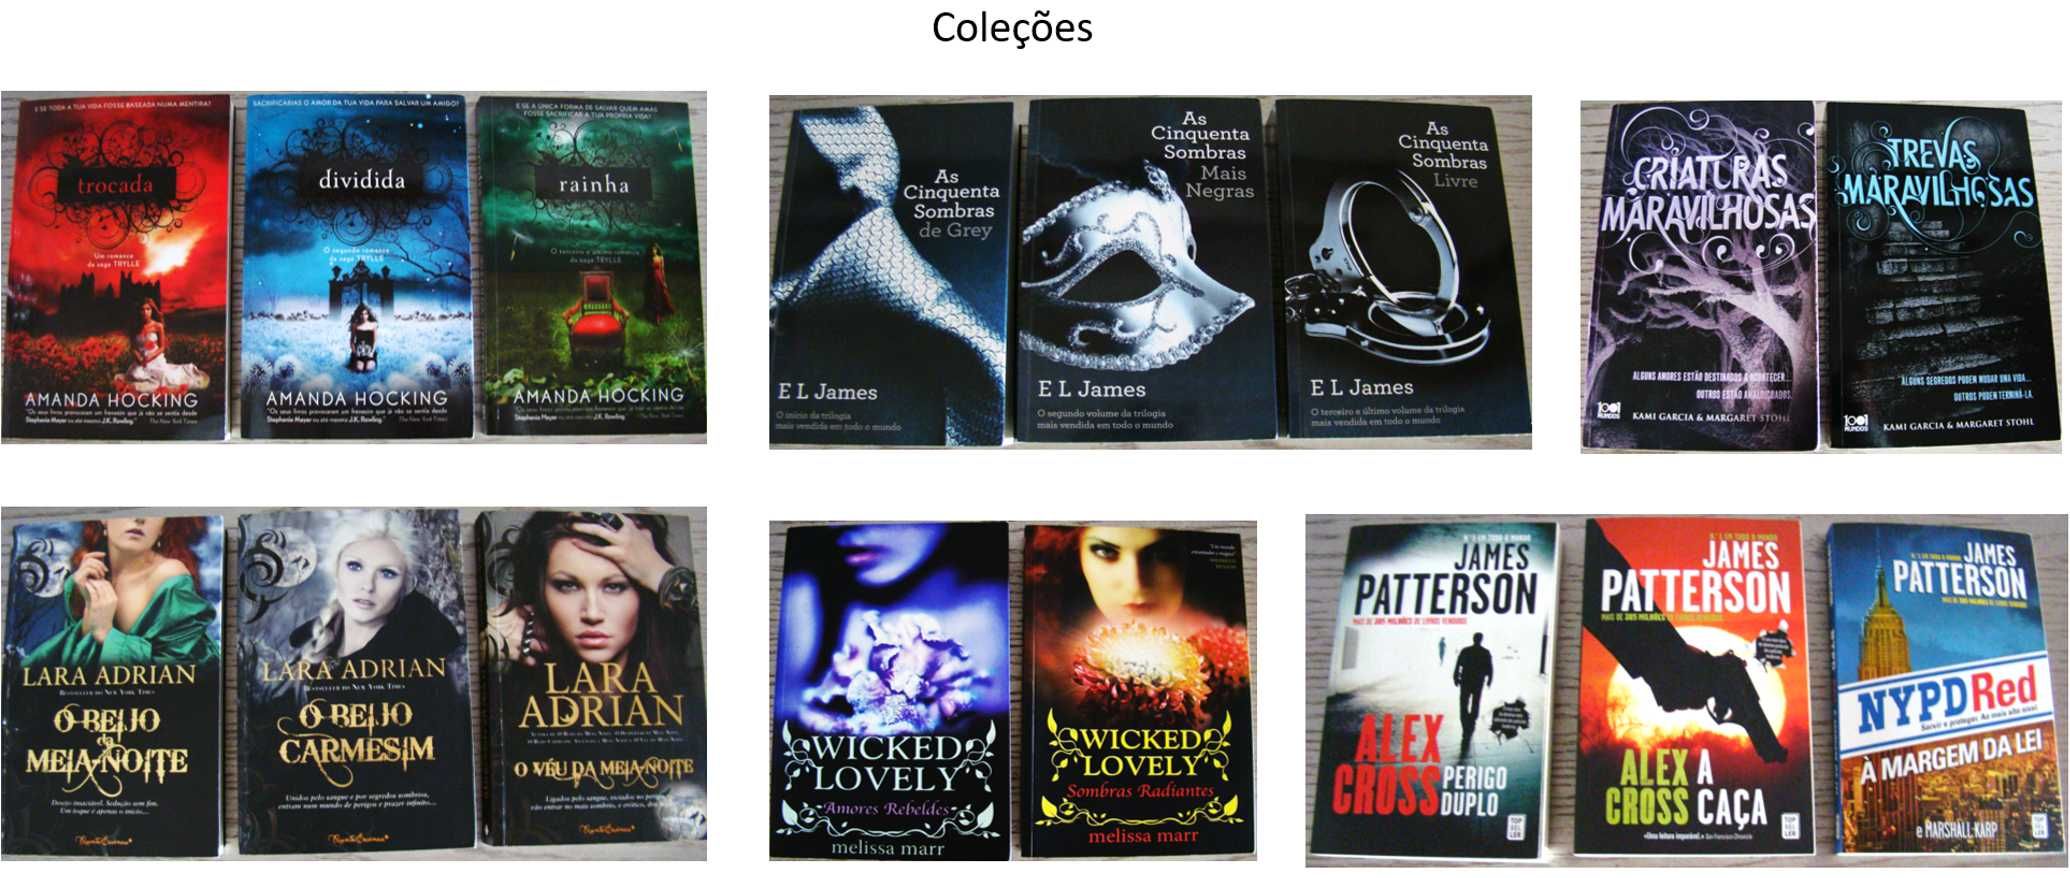 Livros de romance, fantasia, policial e biográficos